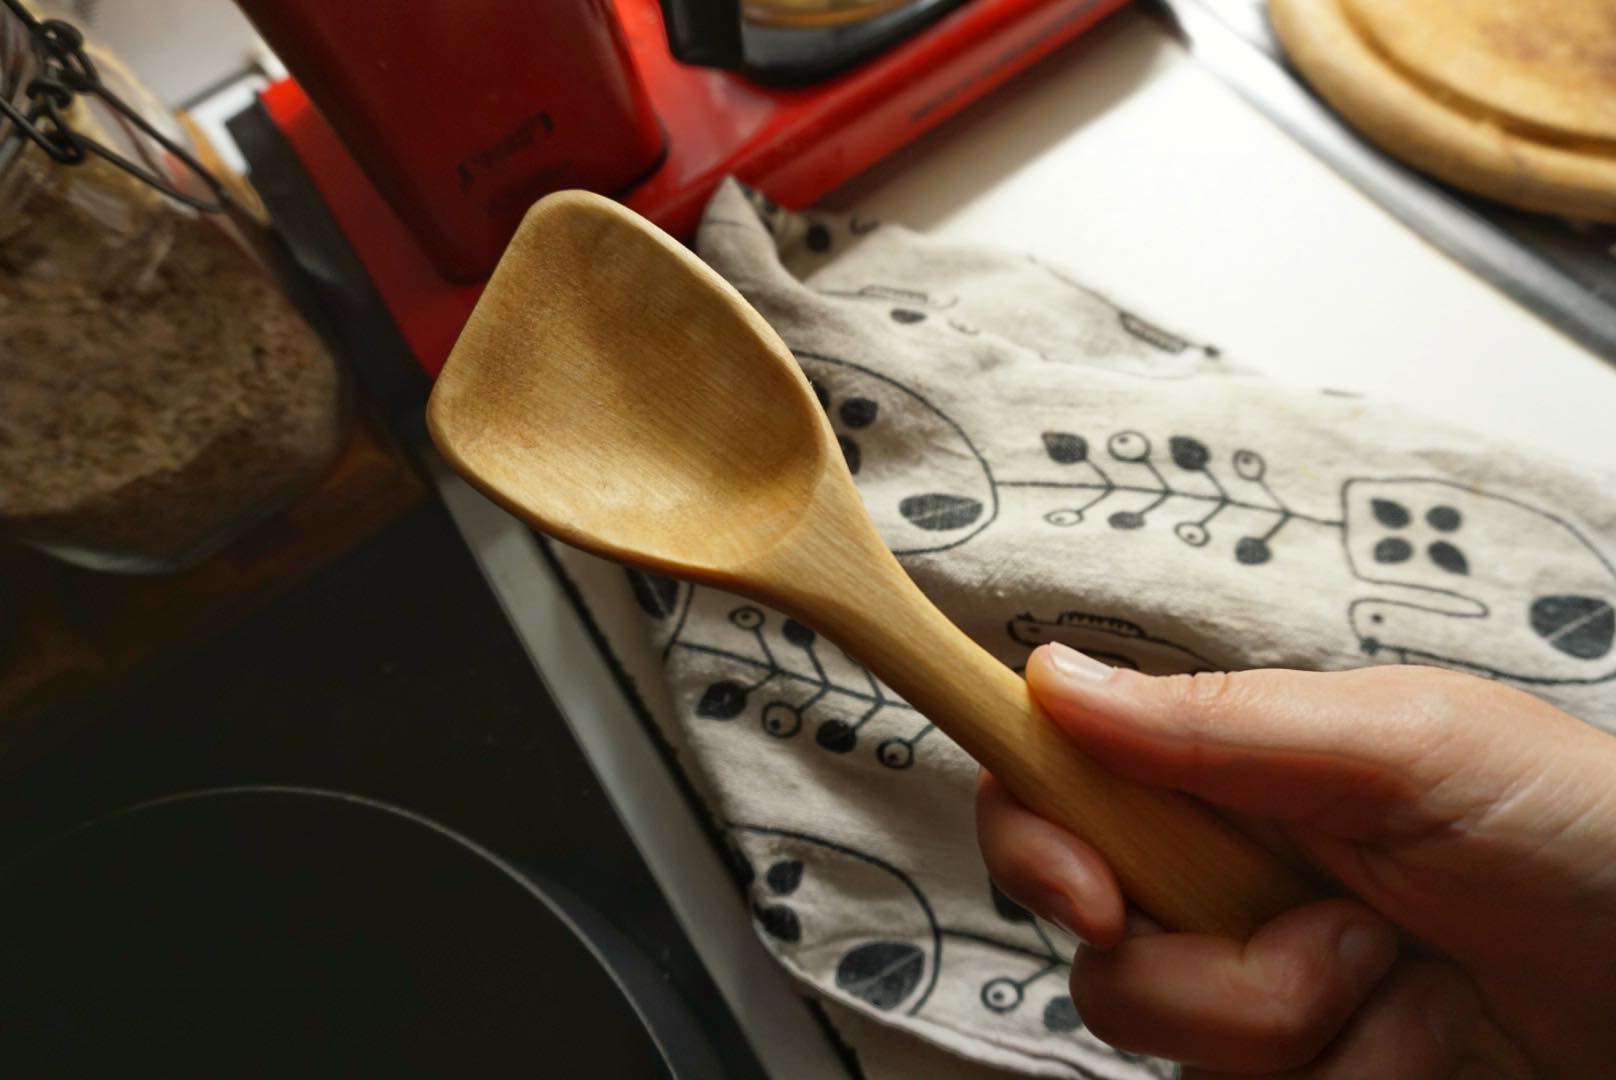 Wooden saimaaLife cooking spatula and Aapiste linen kitchen towel